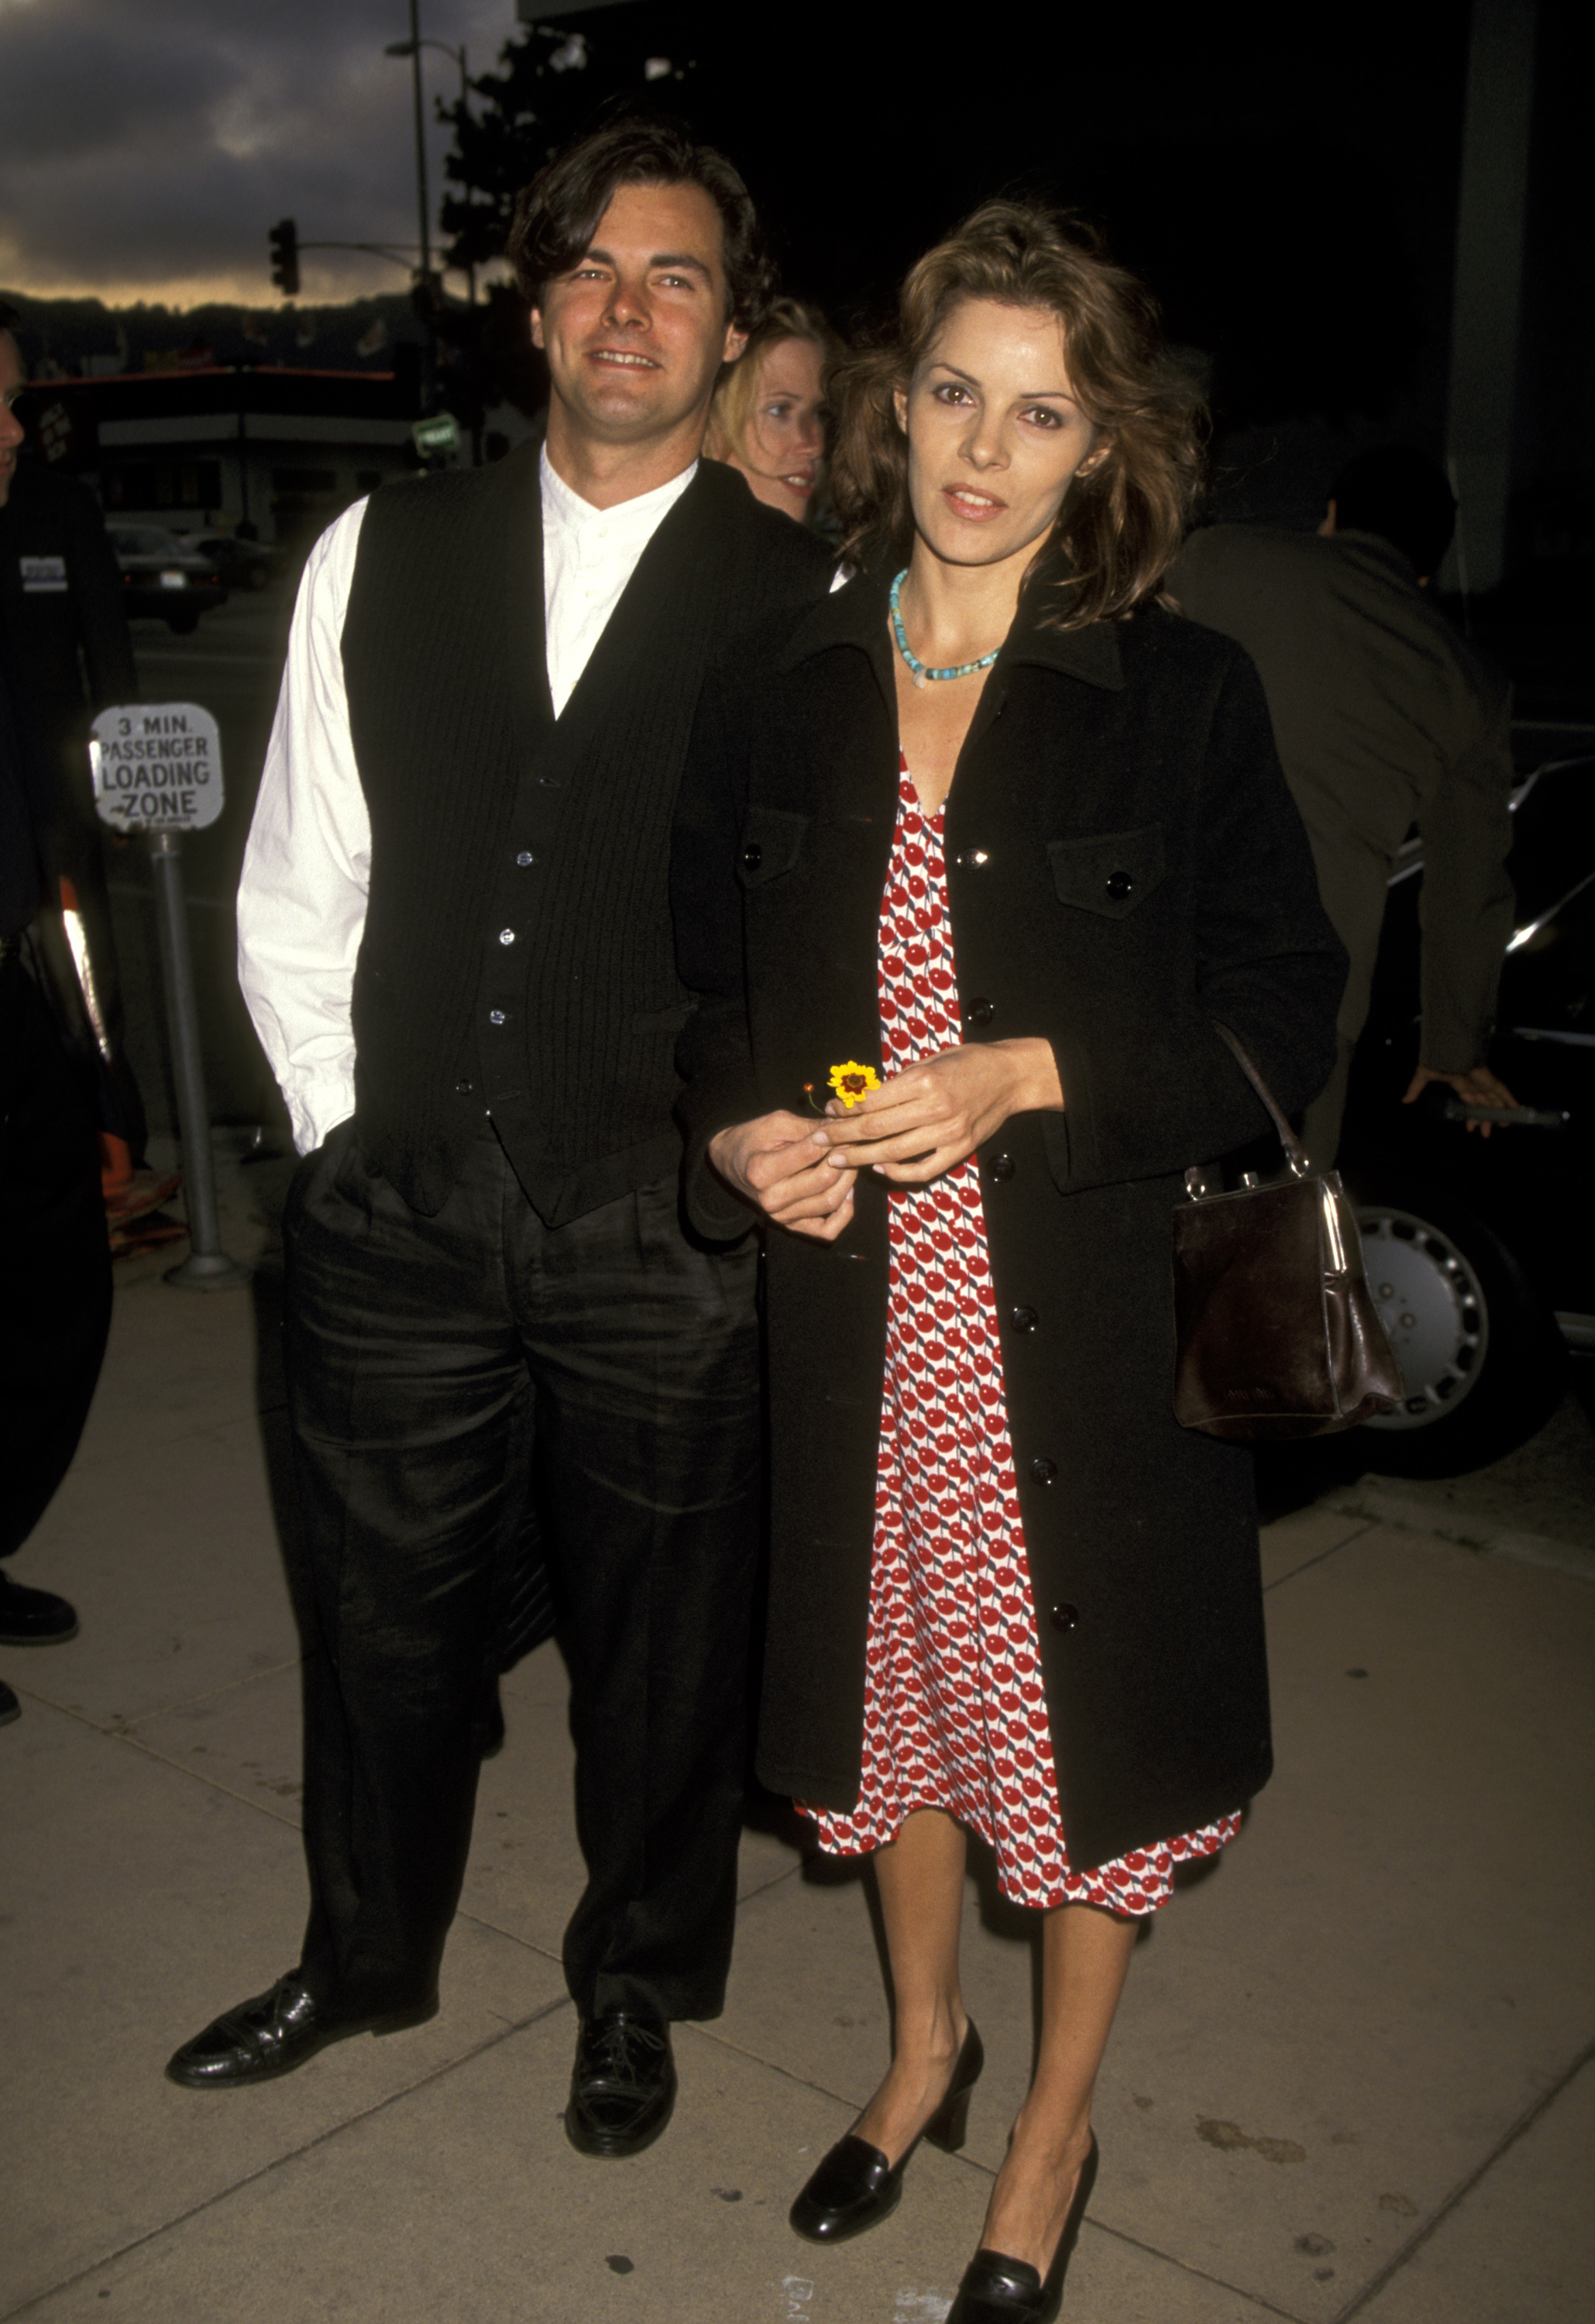 Damon y Tahnee Welch durante el estreno de "I Shot Andy Warhol" en Hollywood, California, el 16 de mayo de 1996. | Fuente: Getty Images